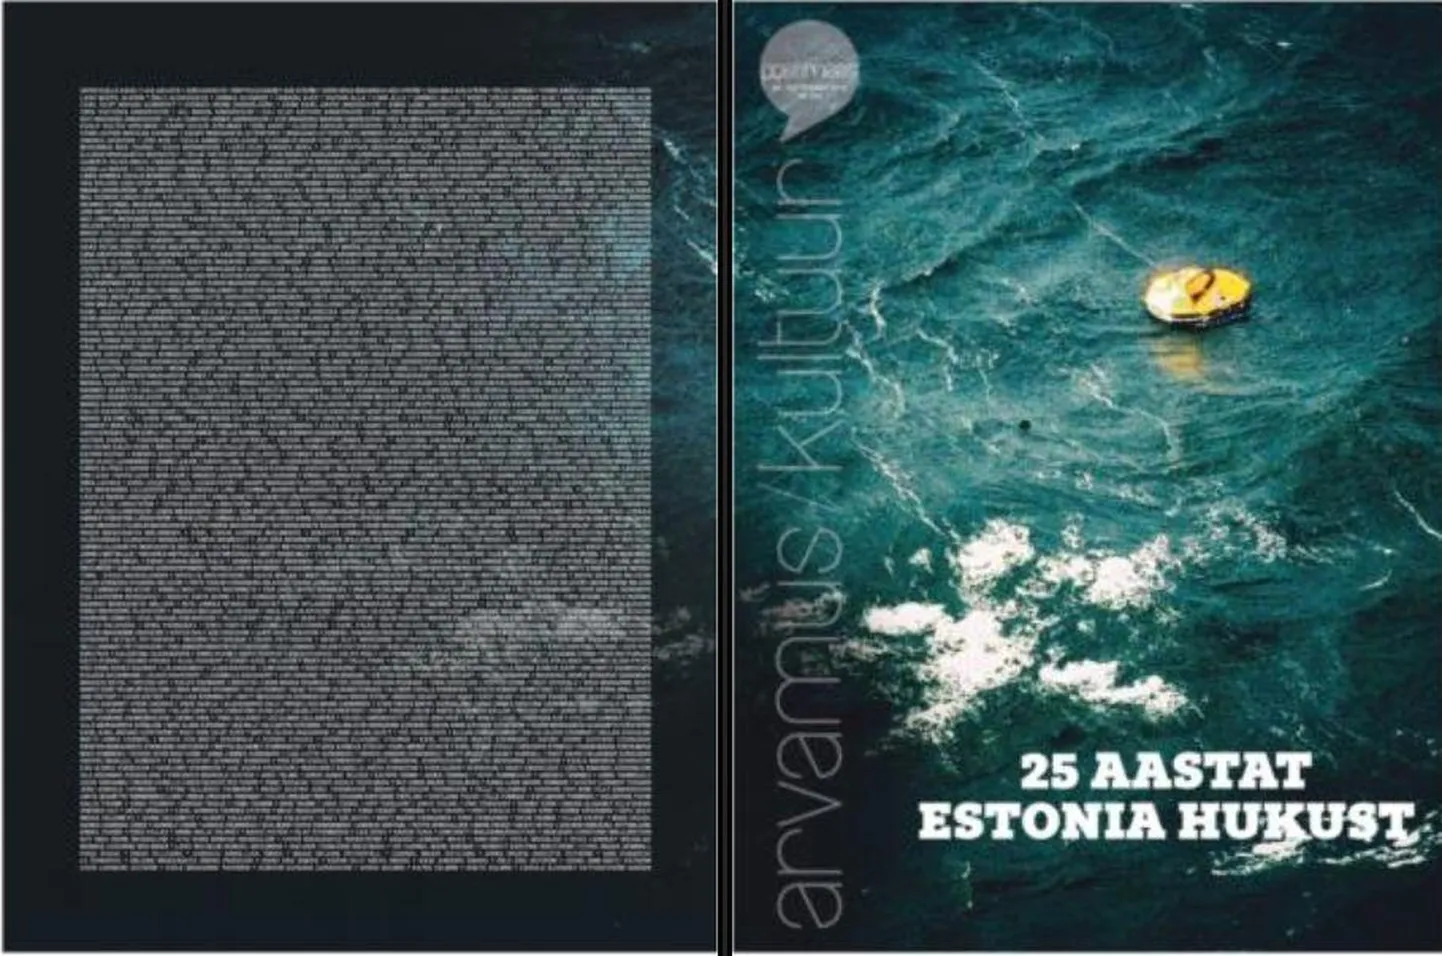 Postimees AK: Estonia huku aastapäev